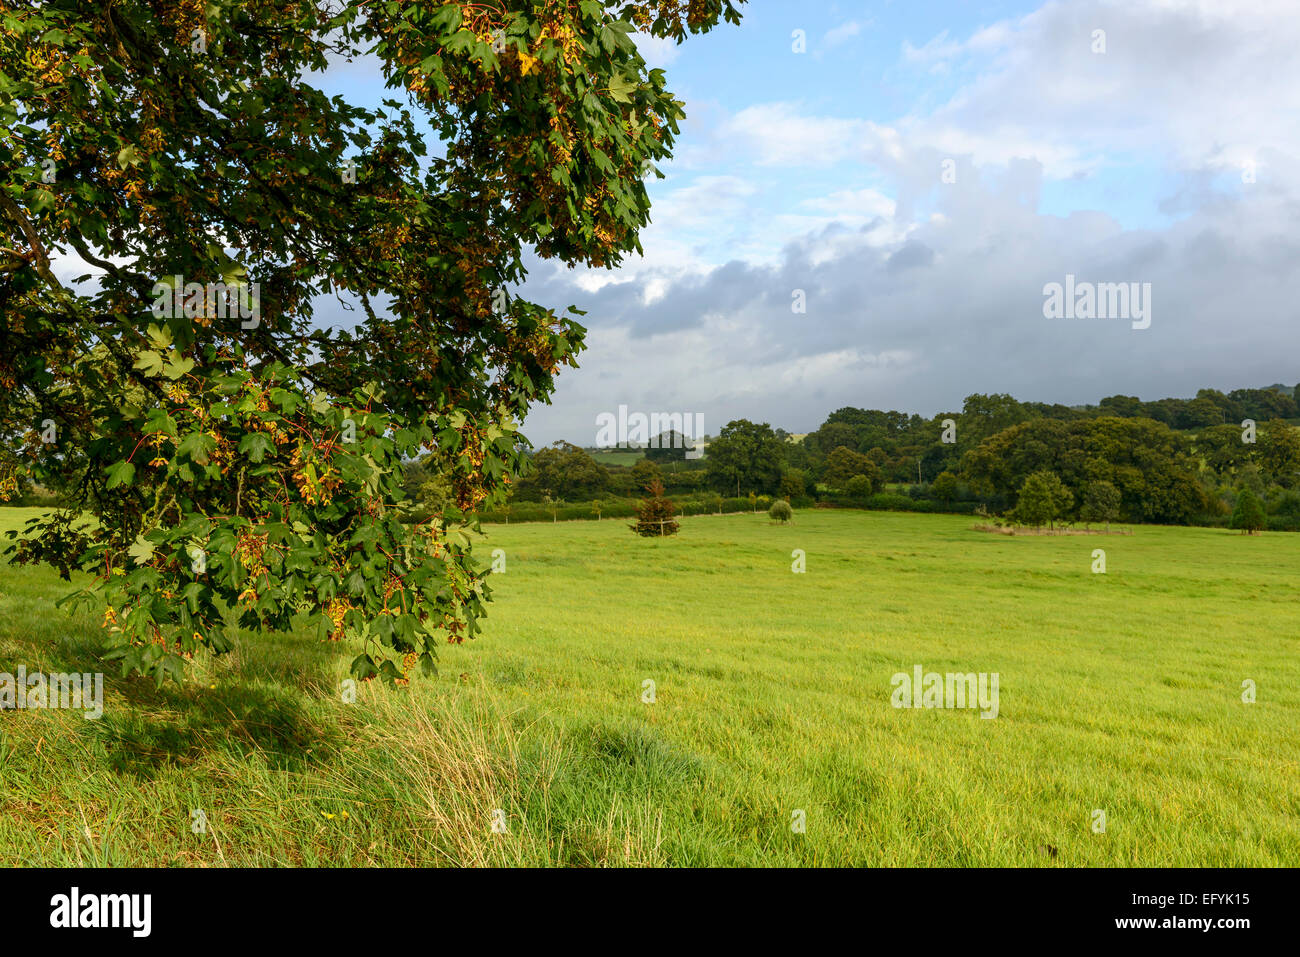 Paesaggio con campi in erba collinare della campagna di Dorset con foglie di albero alleggerito dai raggi del sole in primo piano Foto Stock